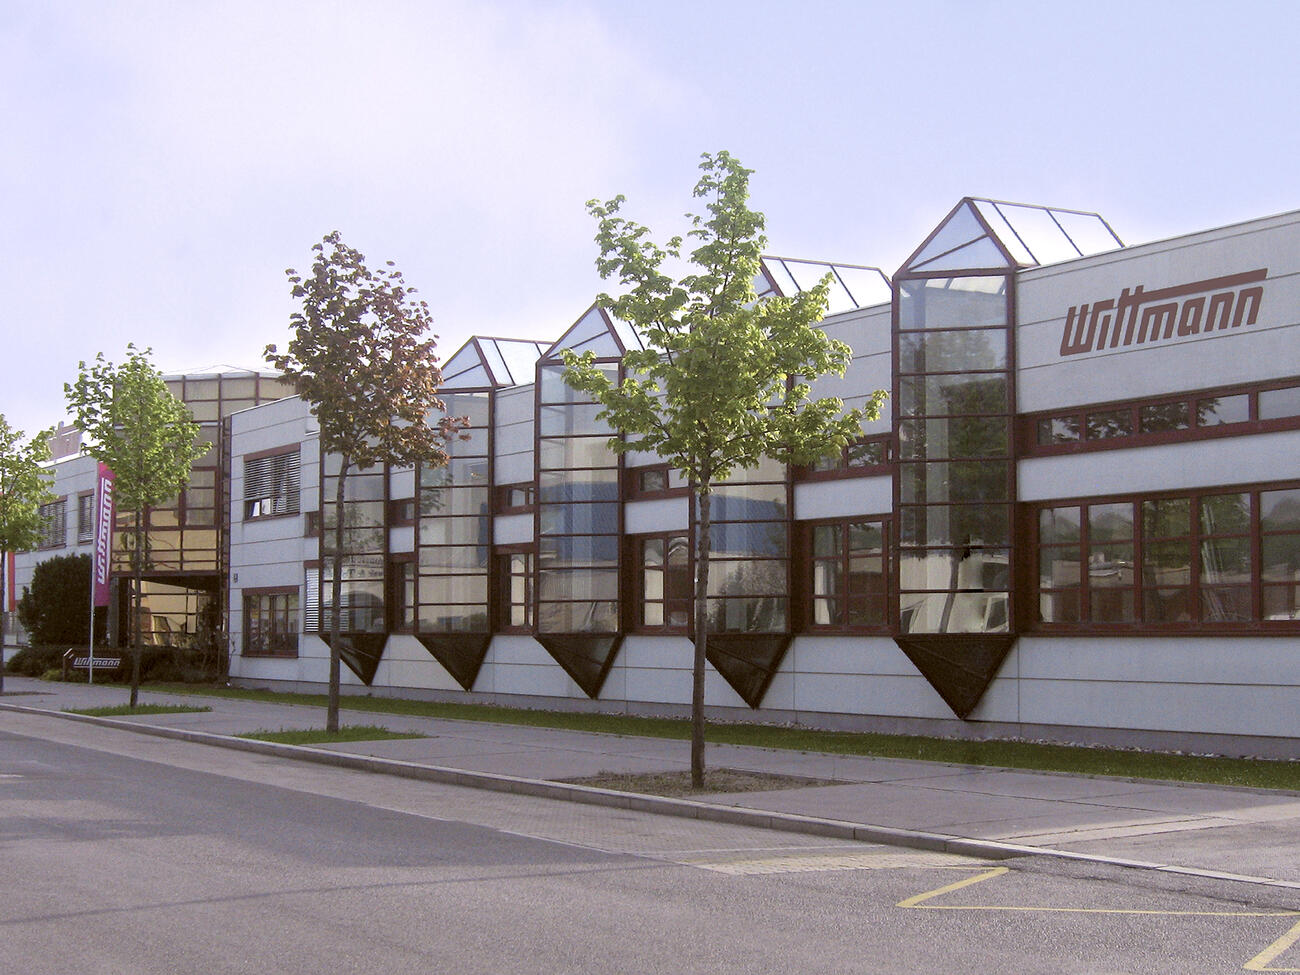 WITTMANN Kunststoffgeräte GmbH – Vienna HQ